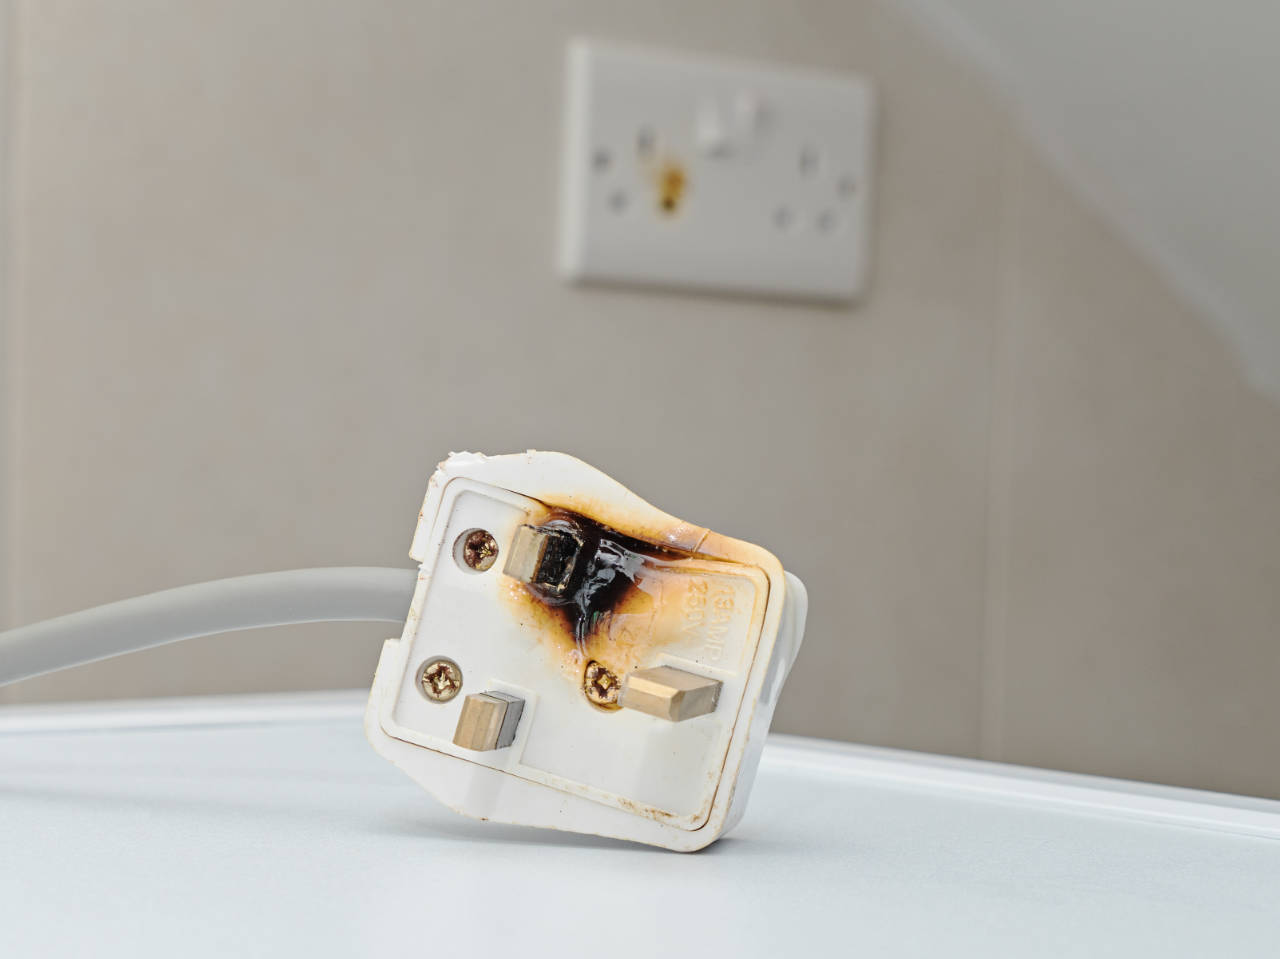 electrical hazards burnt plug